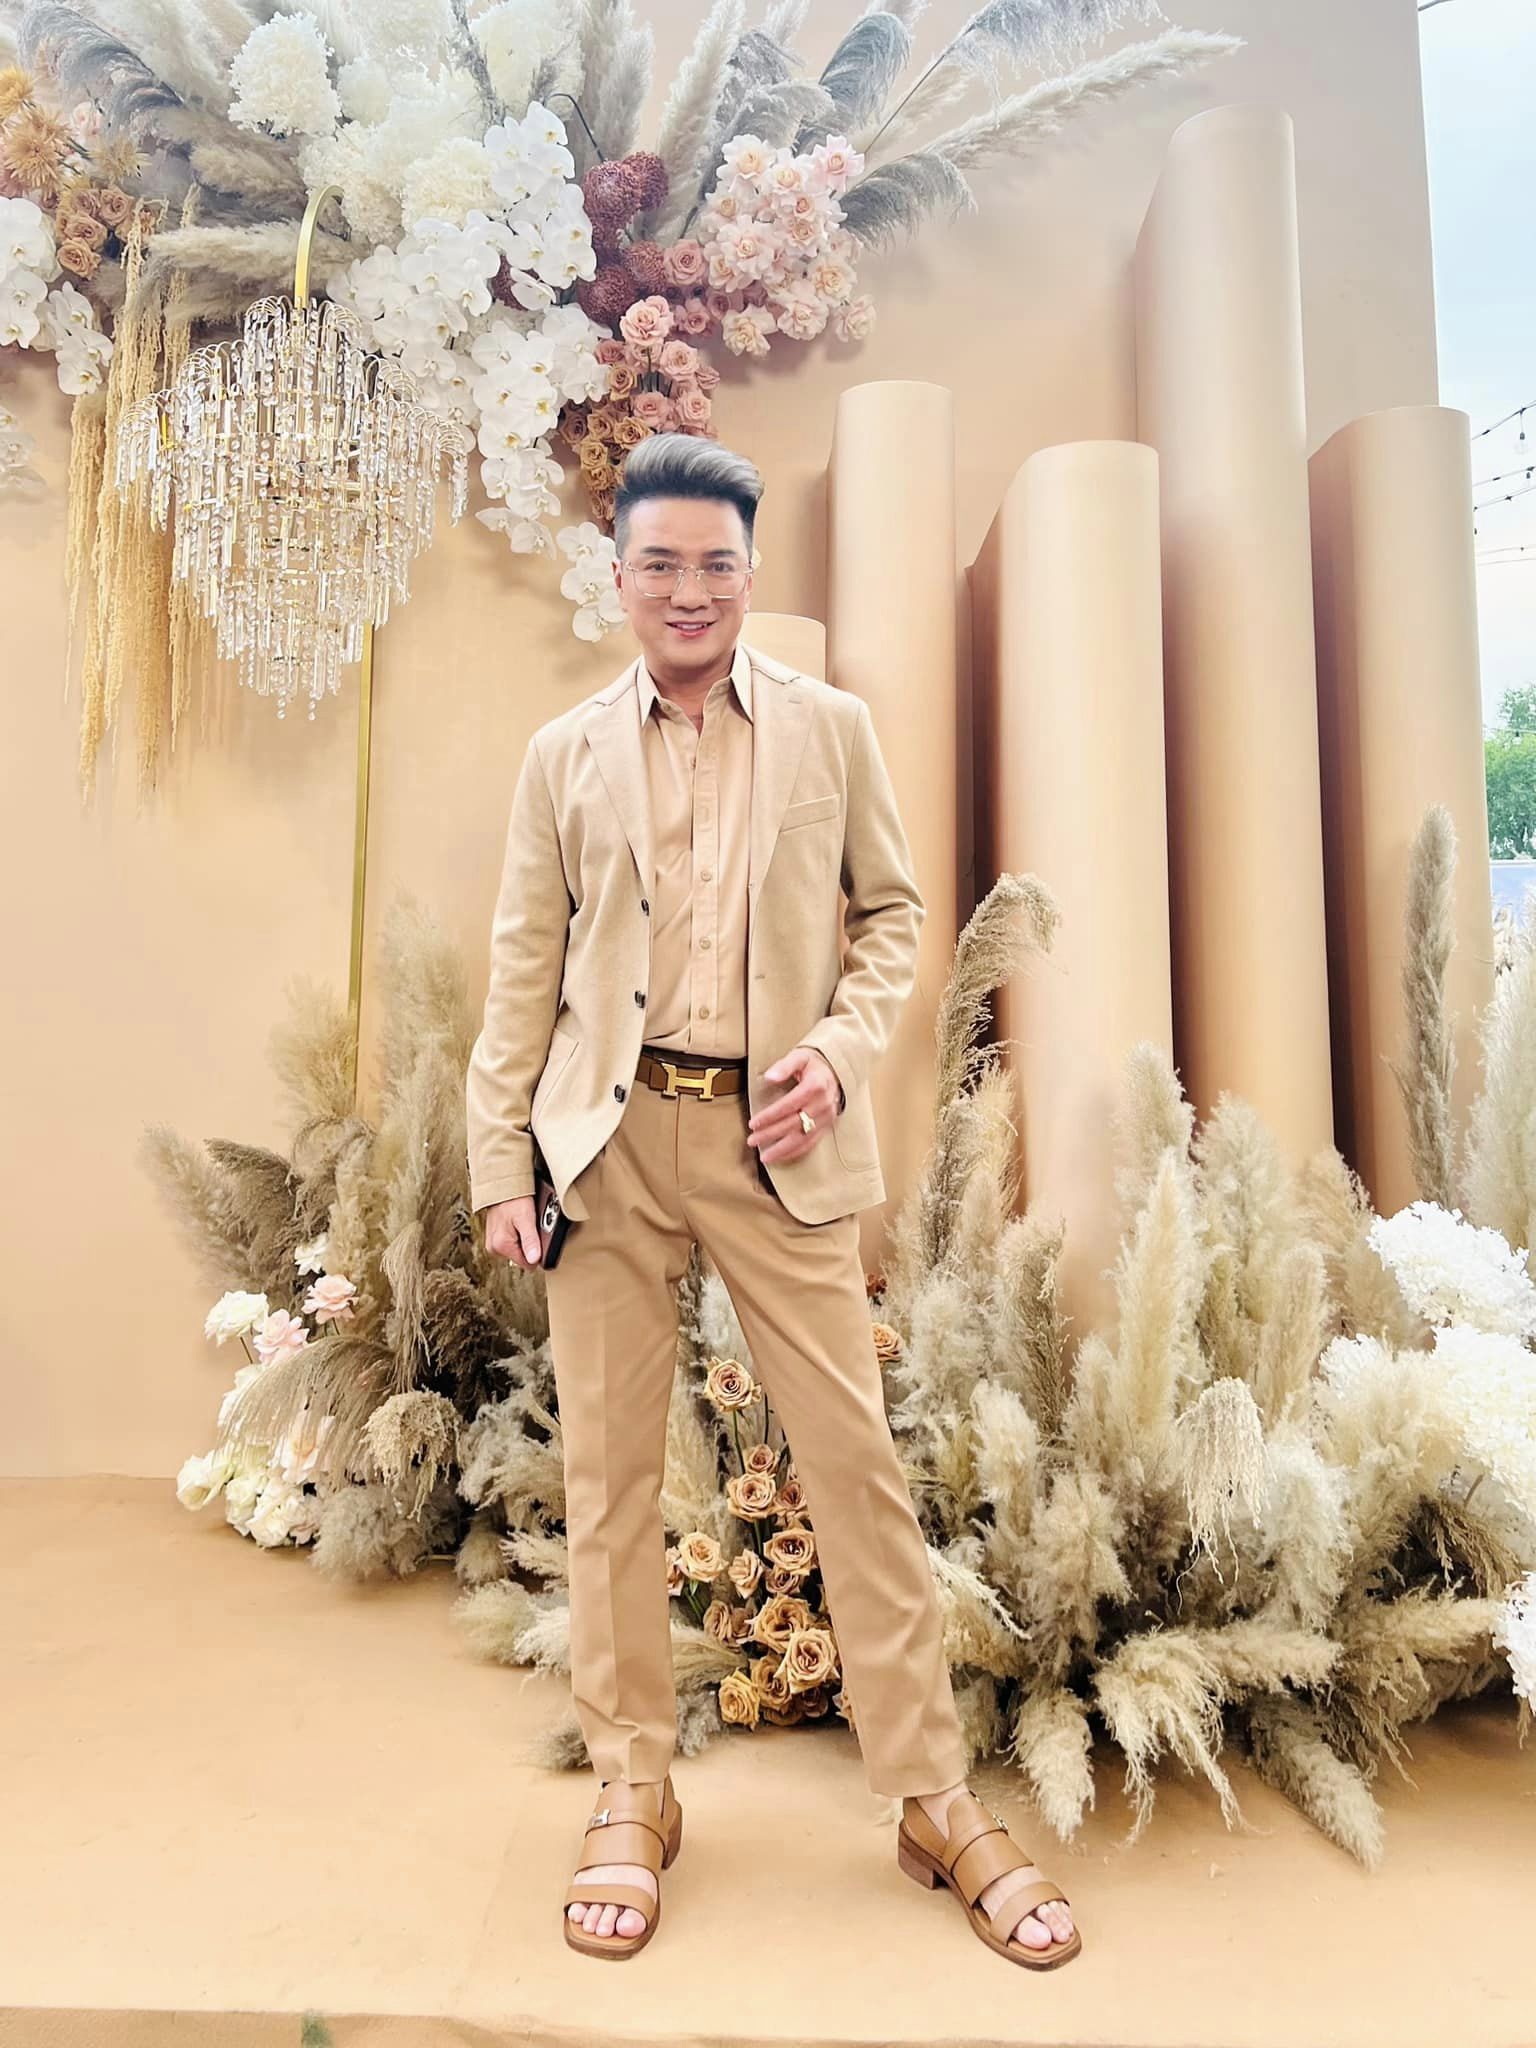 Mức cát xê gần 500 triệu/show đám cưới, vì sao Đàm Vĩnh Hưng 'hát free' cho hôn lễ của Phương Lan và Puka? - ảnh 3